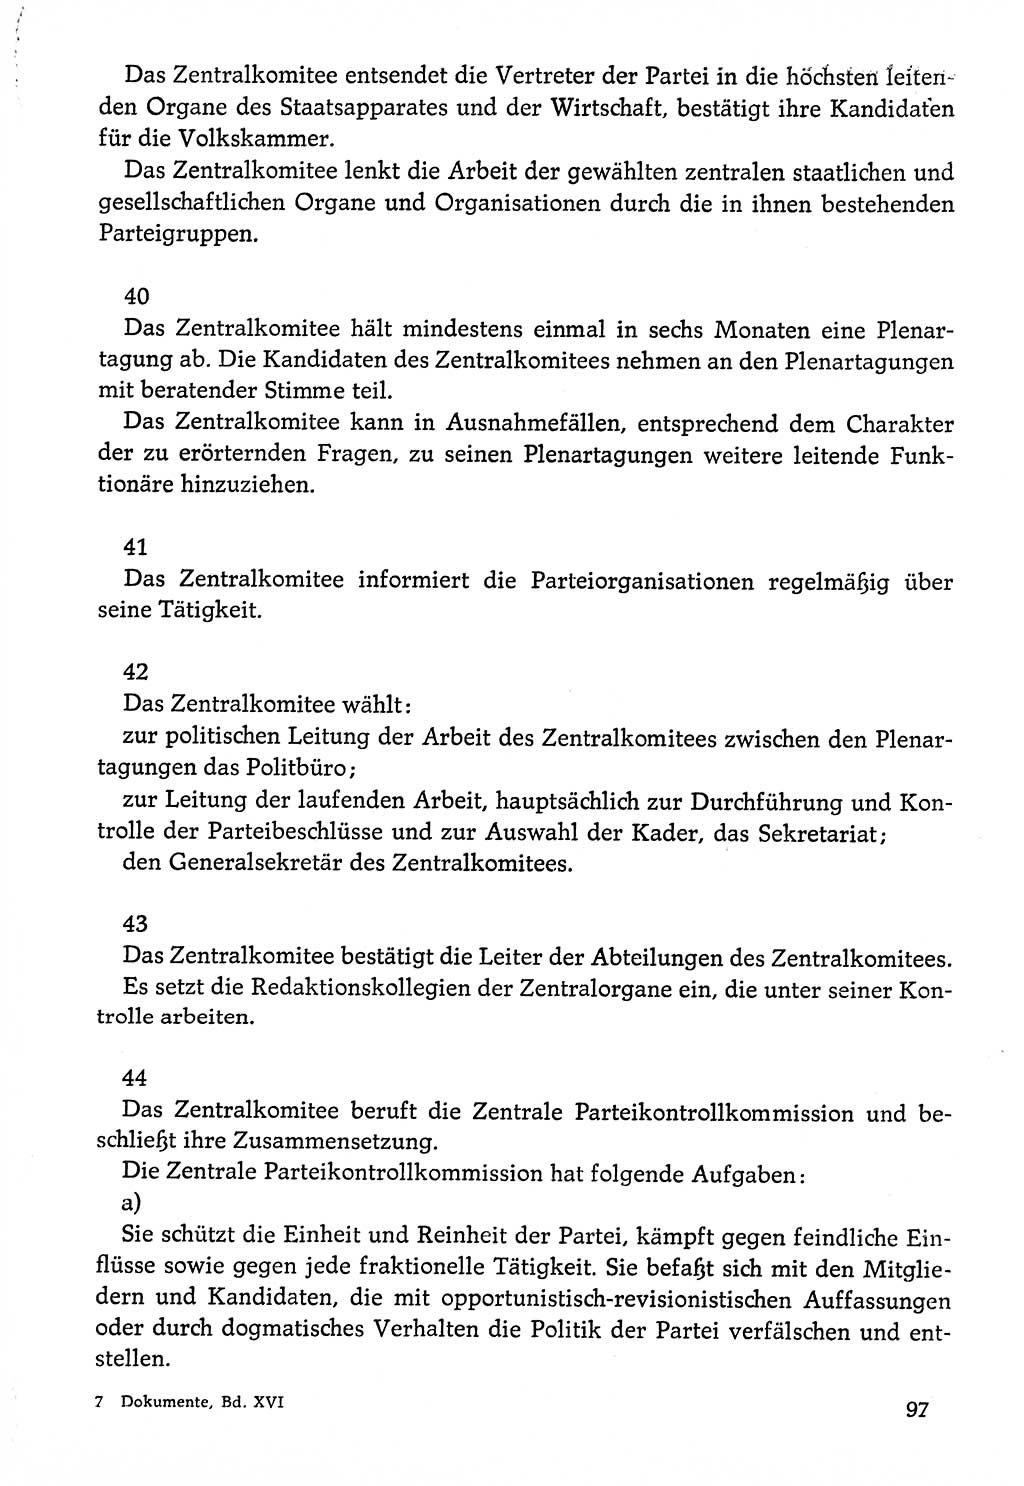 Dokumente der Sozialistischen Einheitspartei Deutschlands (SED) [Deutsche Demokratische Republik (DDR)] 1976-1977, Seite 97 (Dok. SED DDR 1976-1977, S. 97)